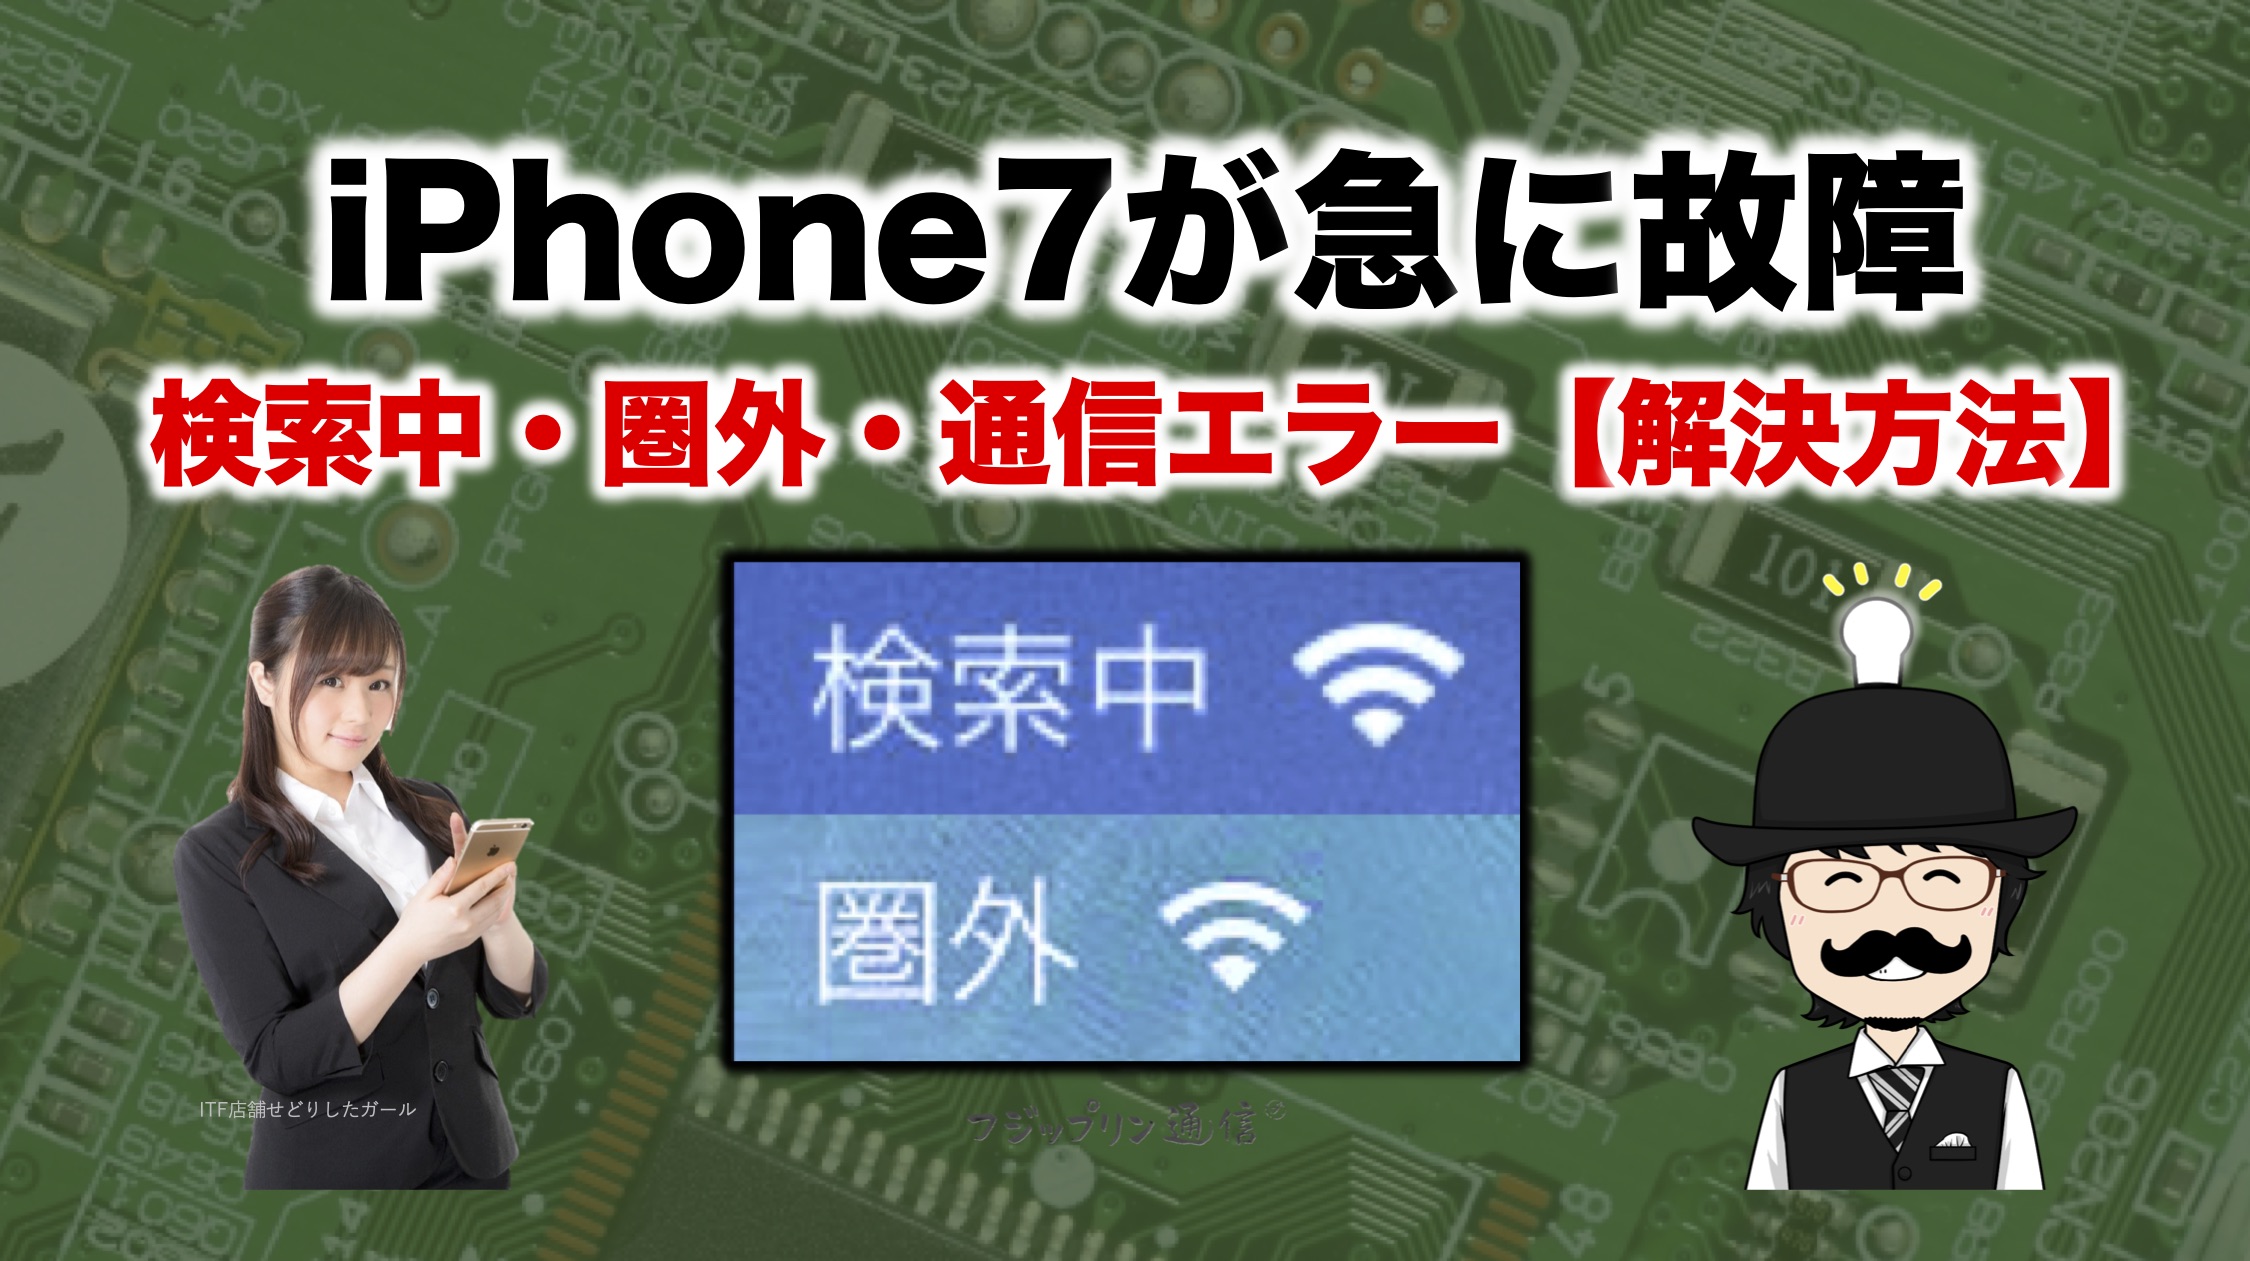 Softbank iPhone7が急に故障【その１ 原因と解決方法】〜検索中・圏外・通信エラー〜